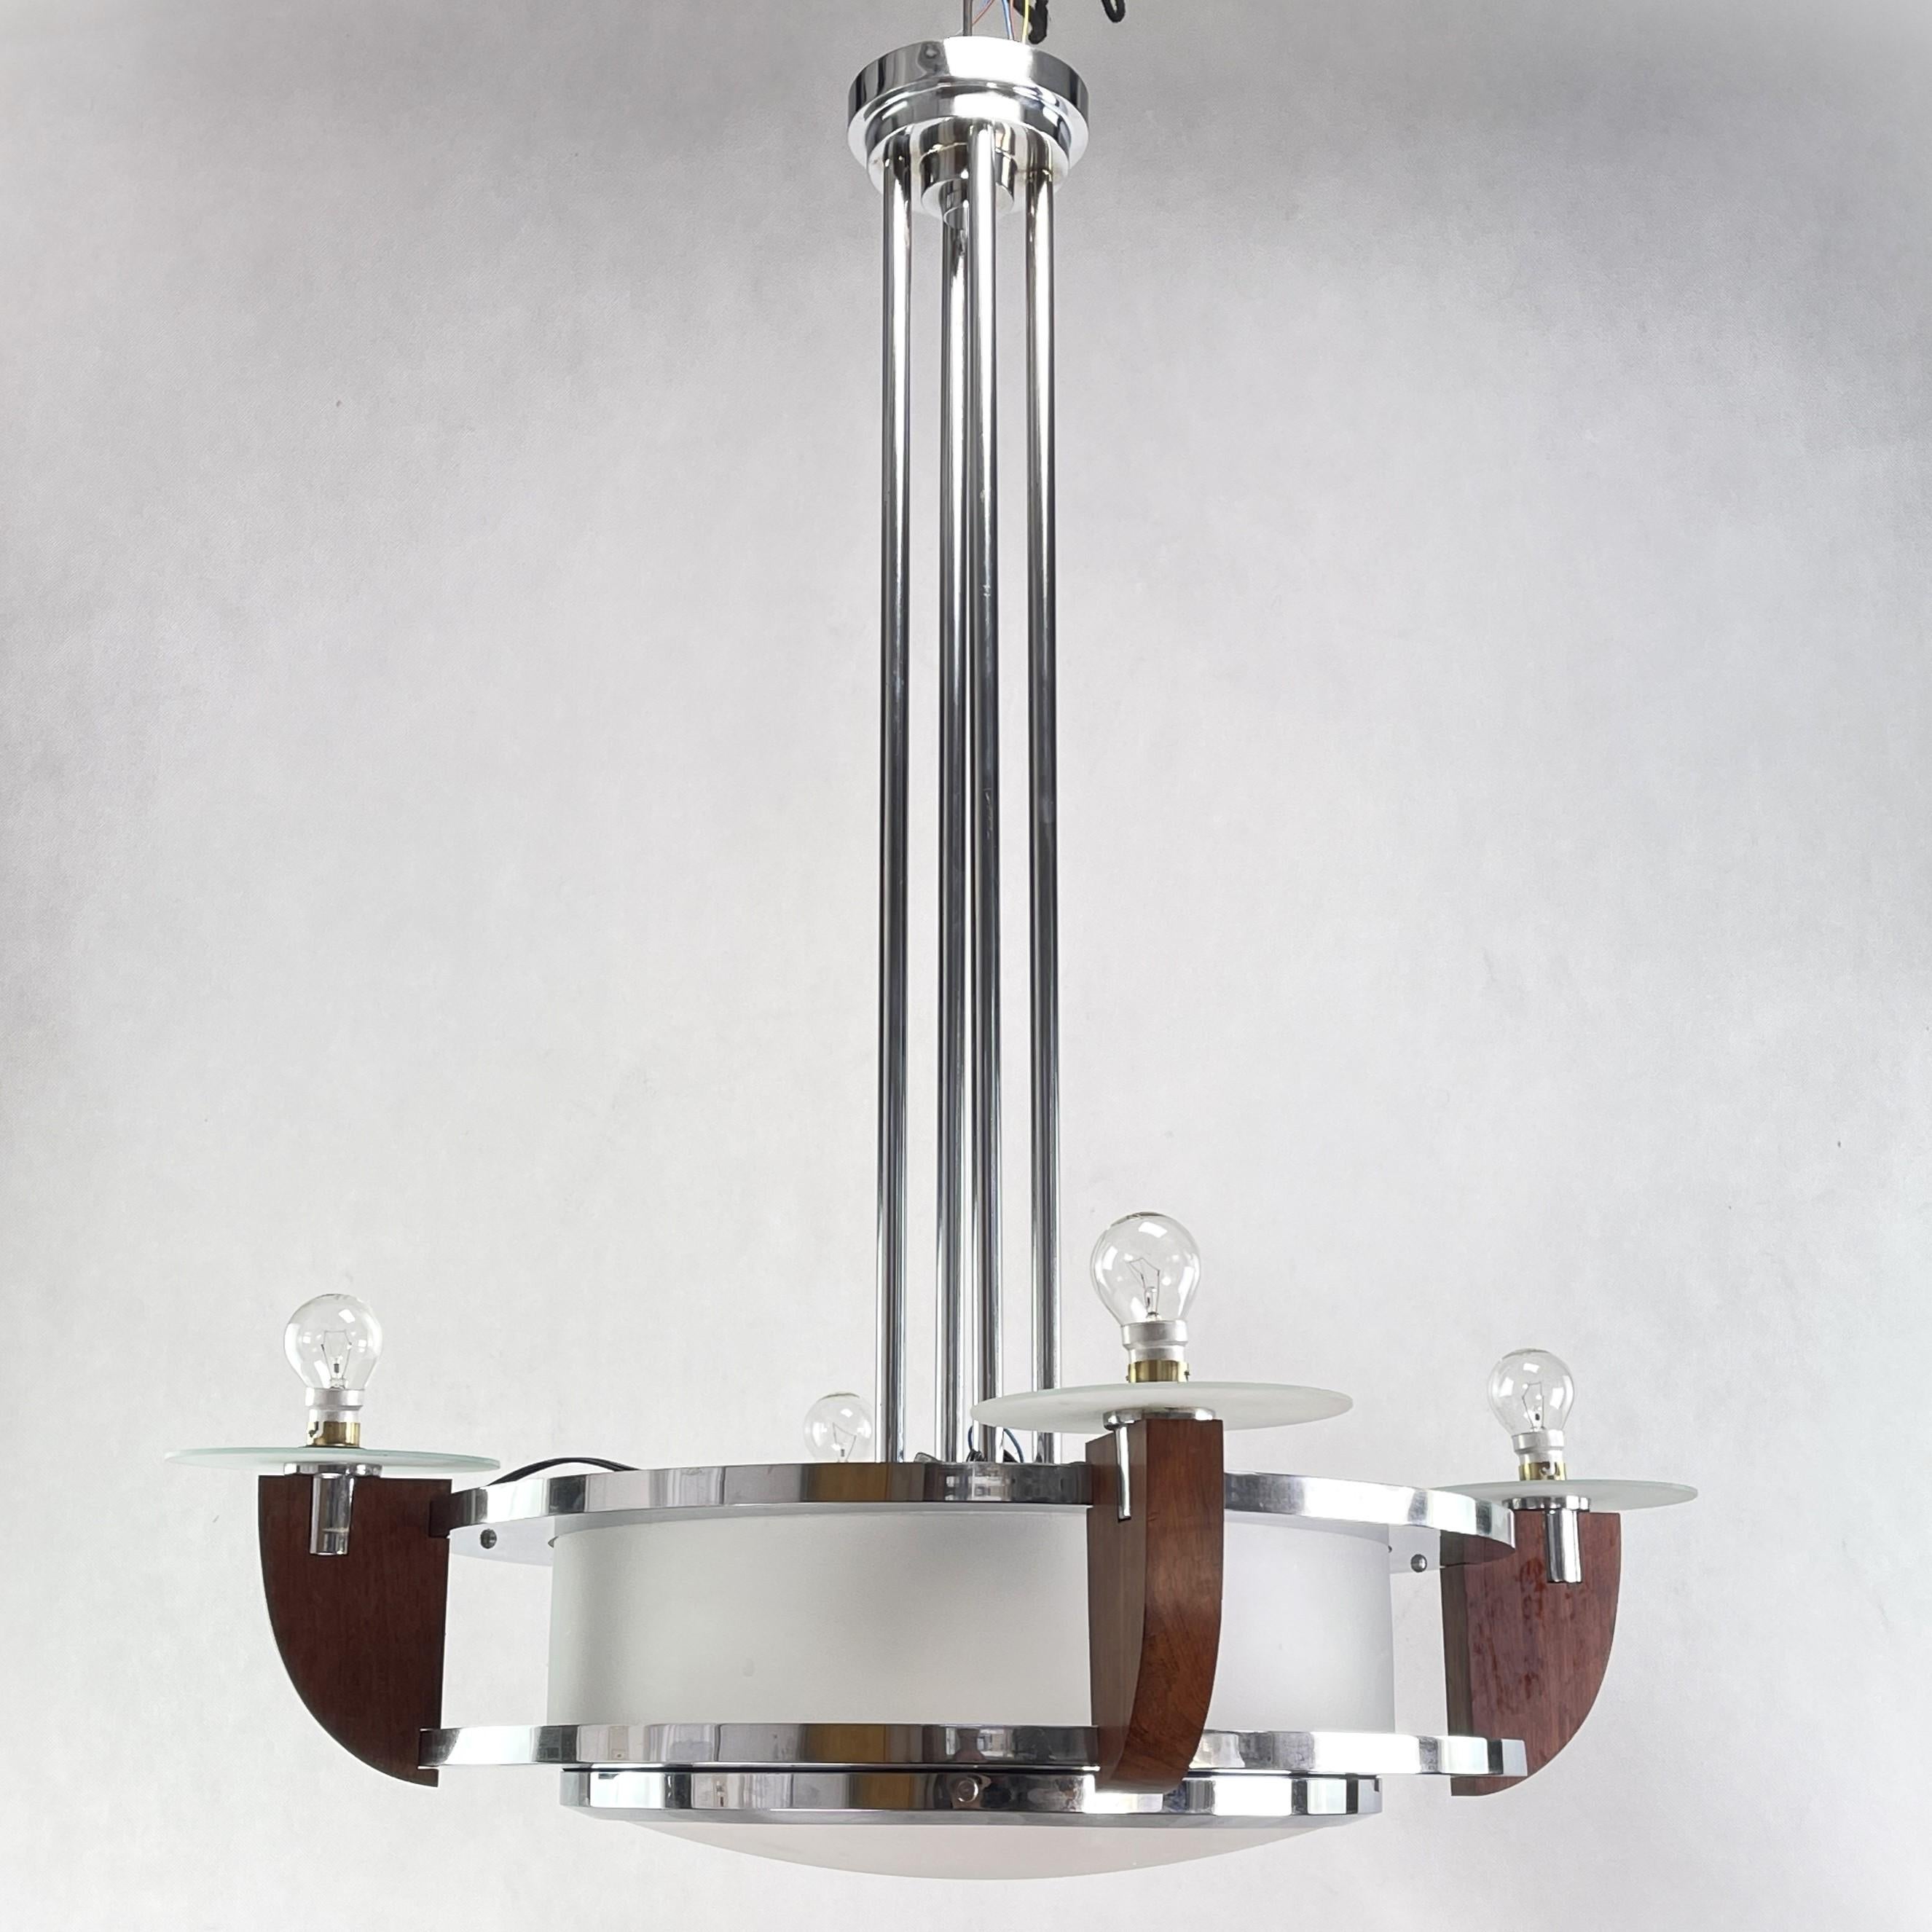 Cette imposante lampe à suspension lourde séduit par son design Art déco simple et sobre. La lampe donne une lumière très agréable. 
Cette lampe impressionnante attire tous les regards. La lampe a toujours ses vieilles lunettes d'origine.

Ce